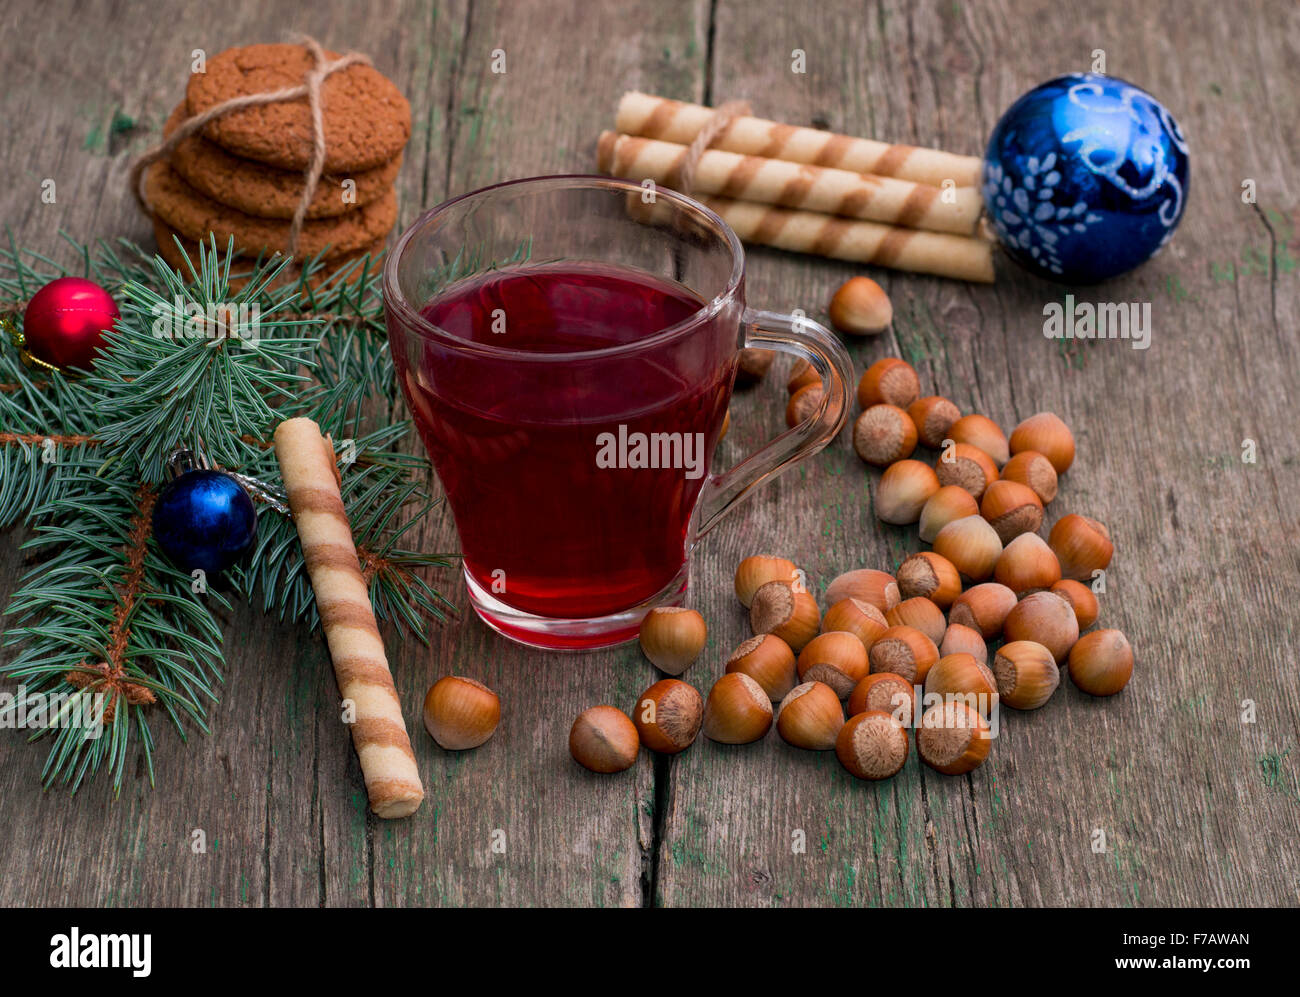 La direction générale de conifères avec des décorations de Noël, du thé, des bonbons et nucule Banque D'Images